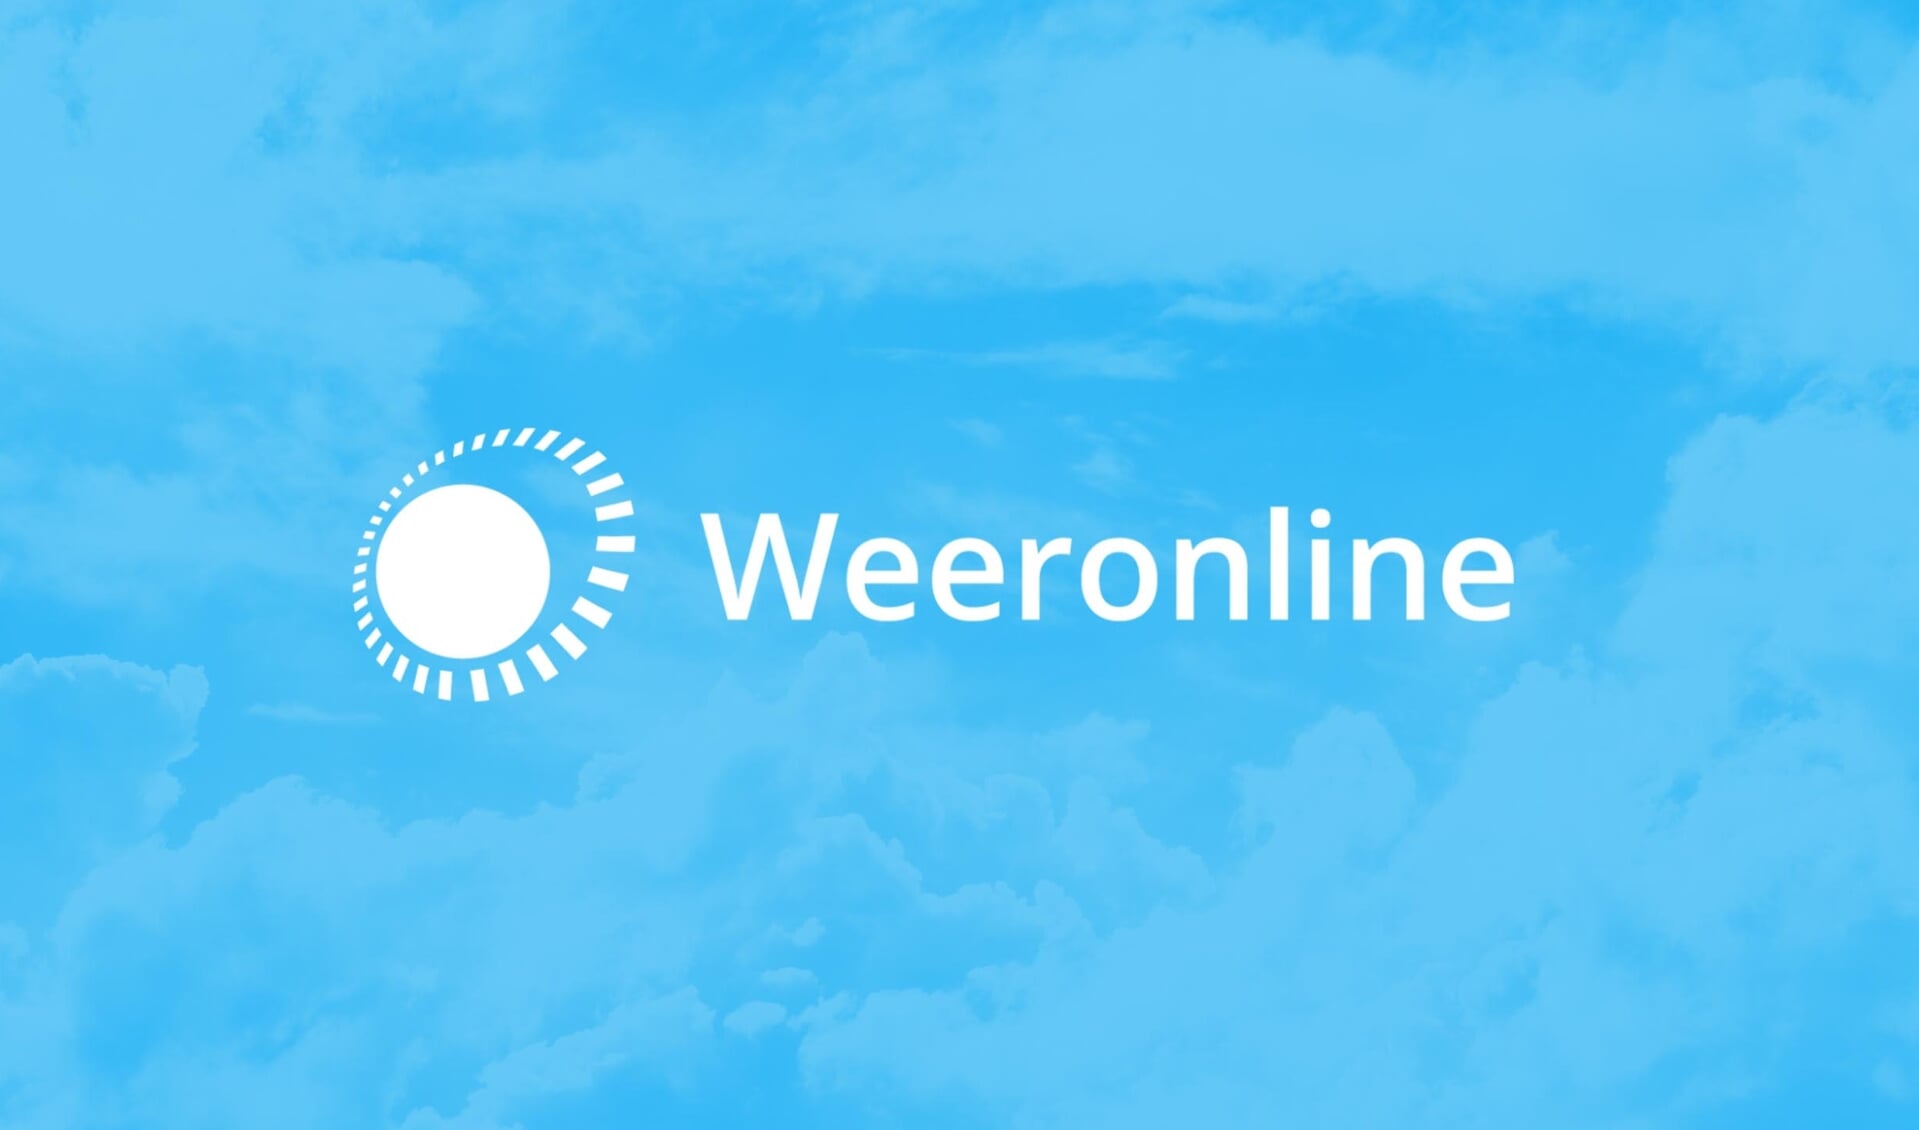 Lees de verwachting voor de komende dagen in het Weeronline weerbericht: https://www.weeronline.nl/weerbericht-nederland.